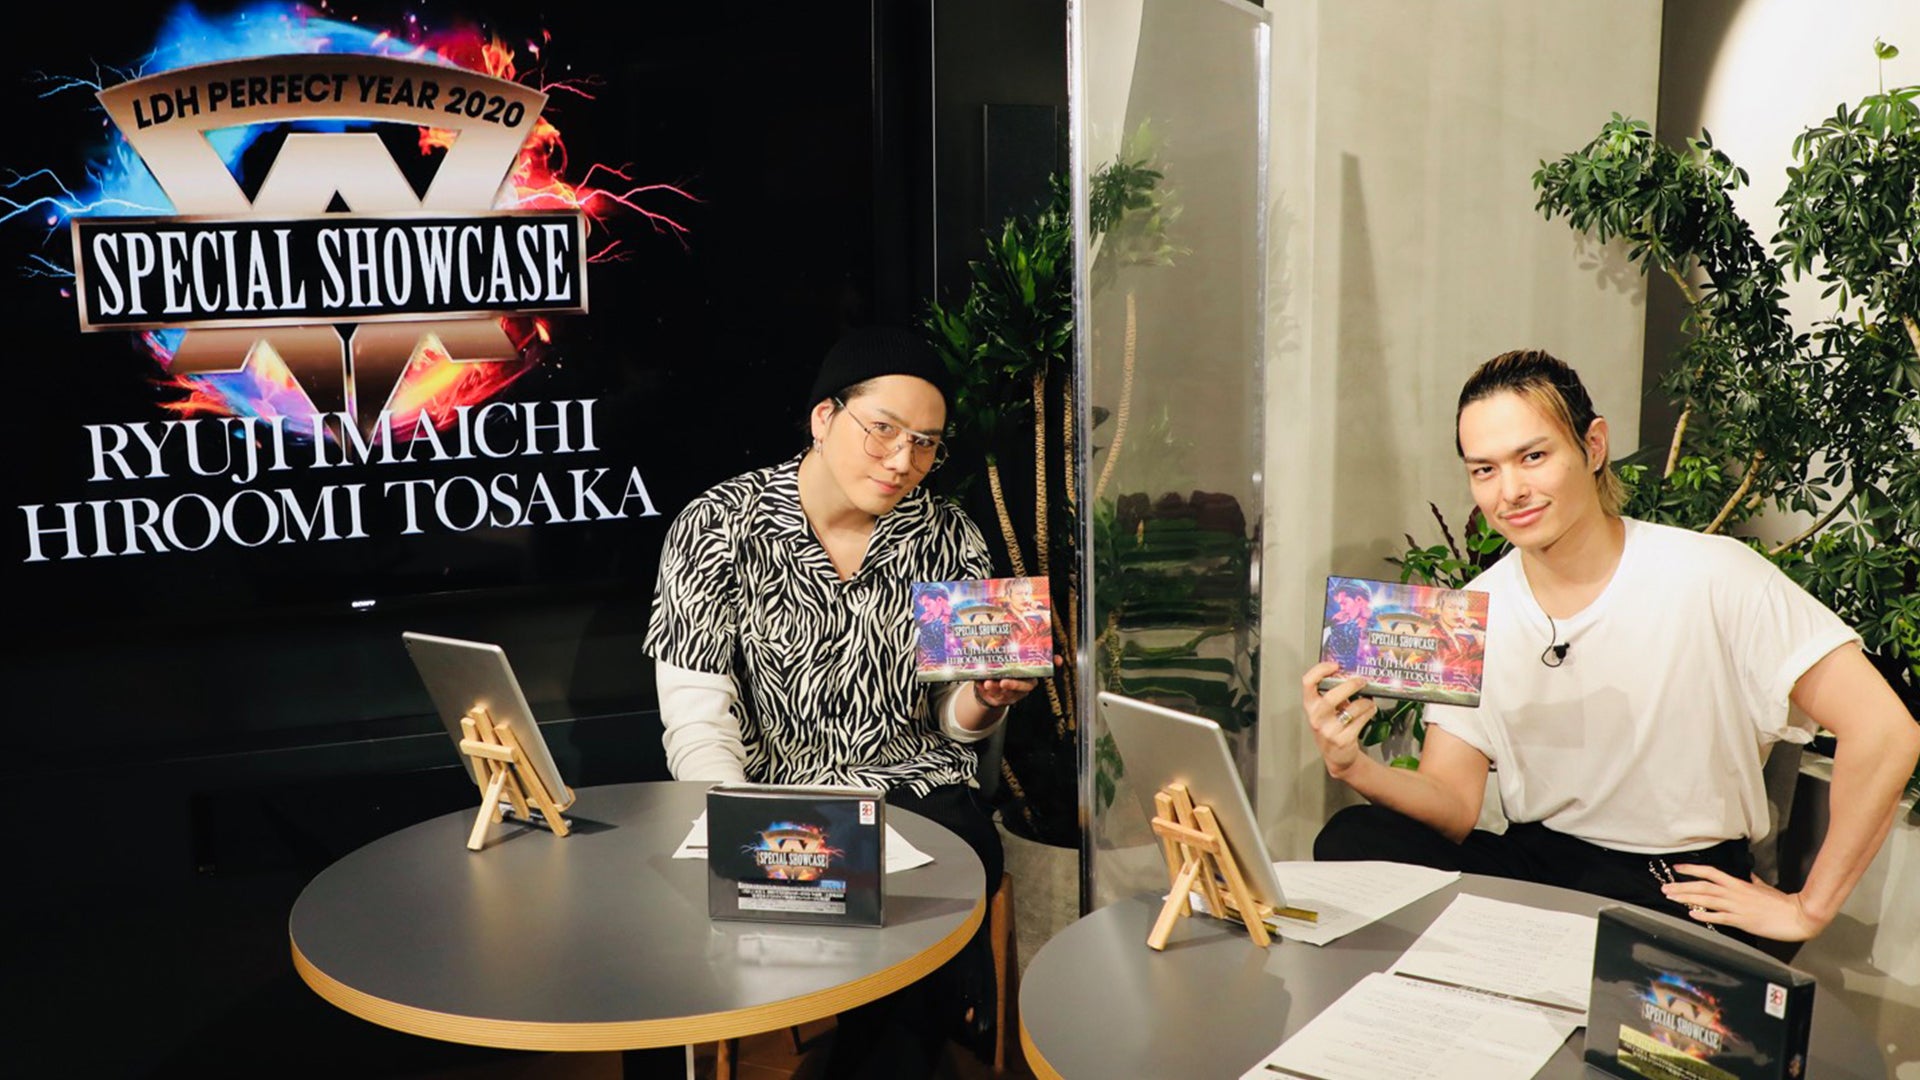 【再配信】「SPECIAL SHOWCASE」 LIVE DVD & Blu-rayリリース記念！ RYUJI IMAICHI / HIROOMI  TOSAKA生配信スペシャル